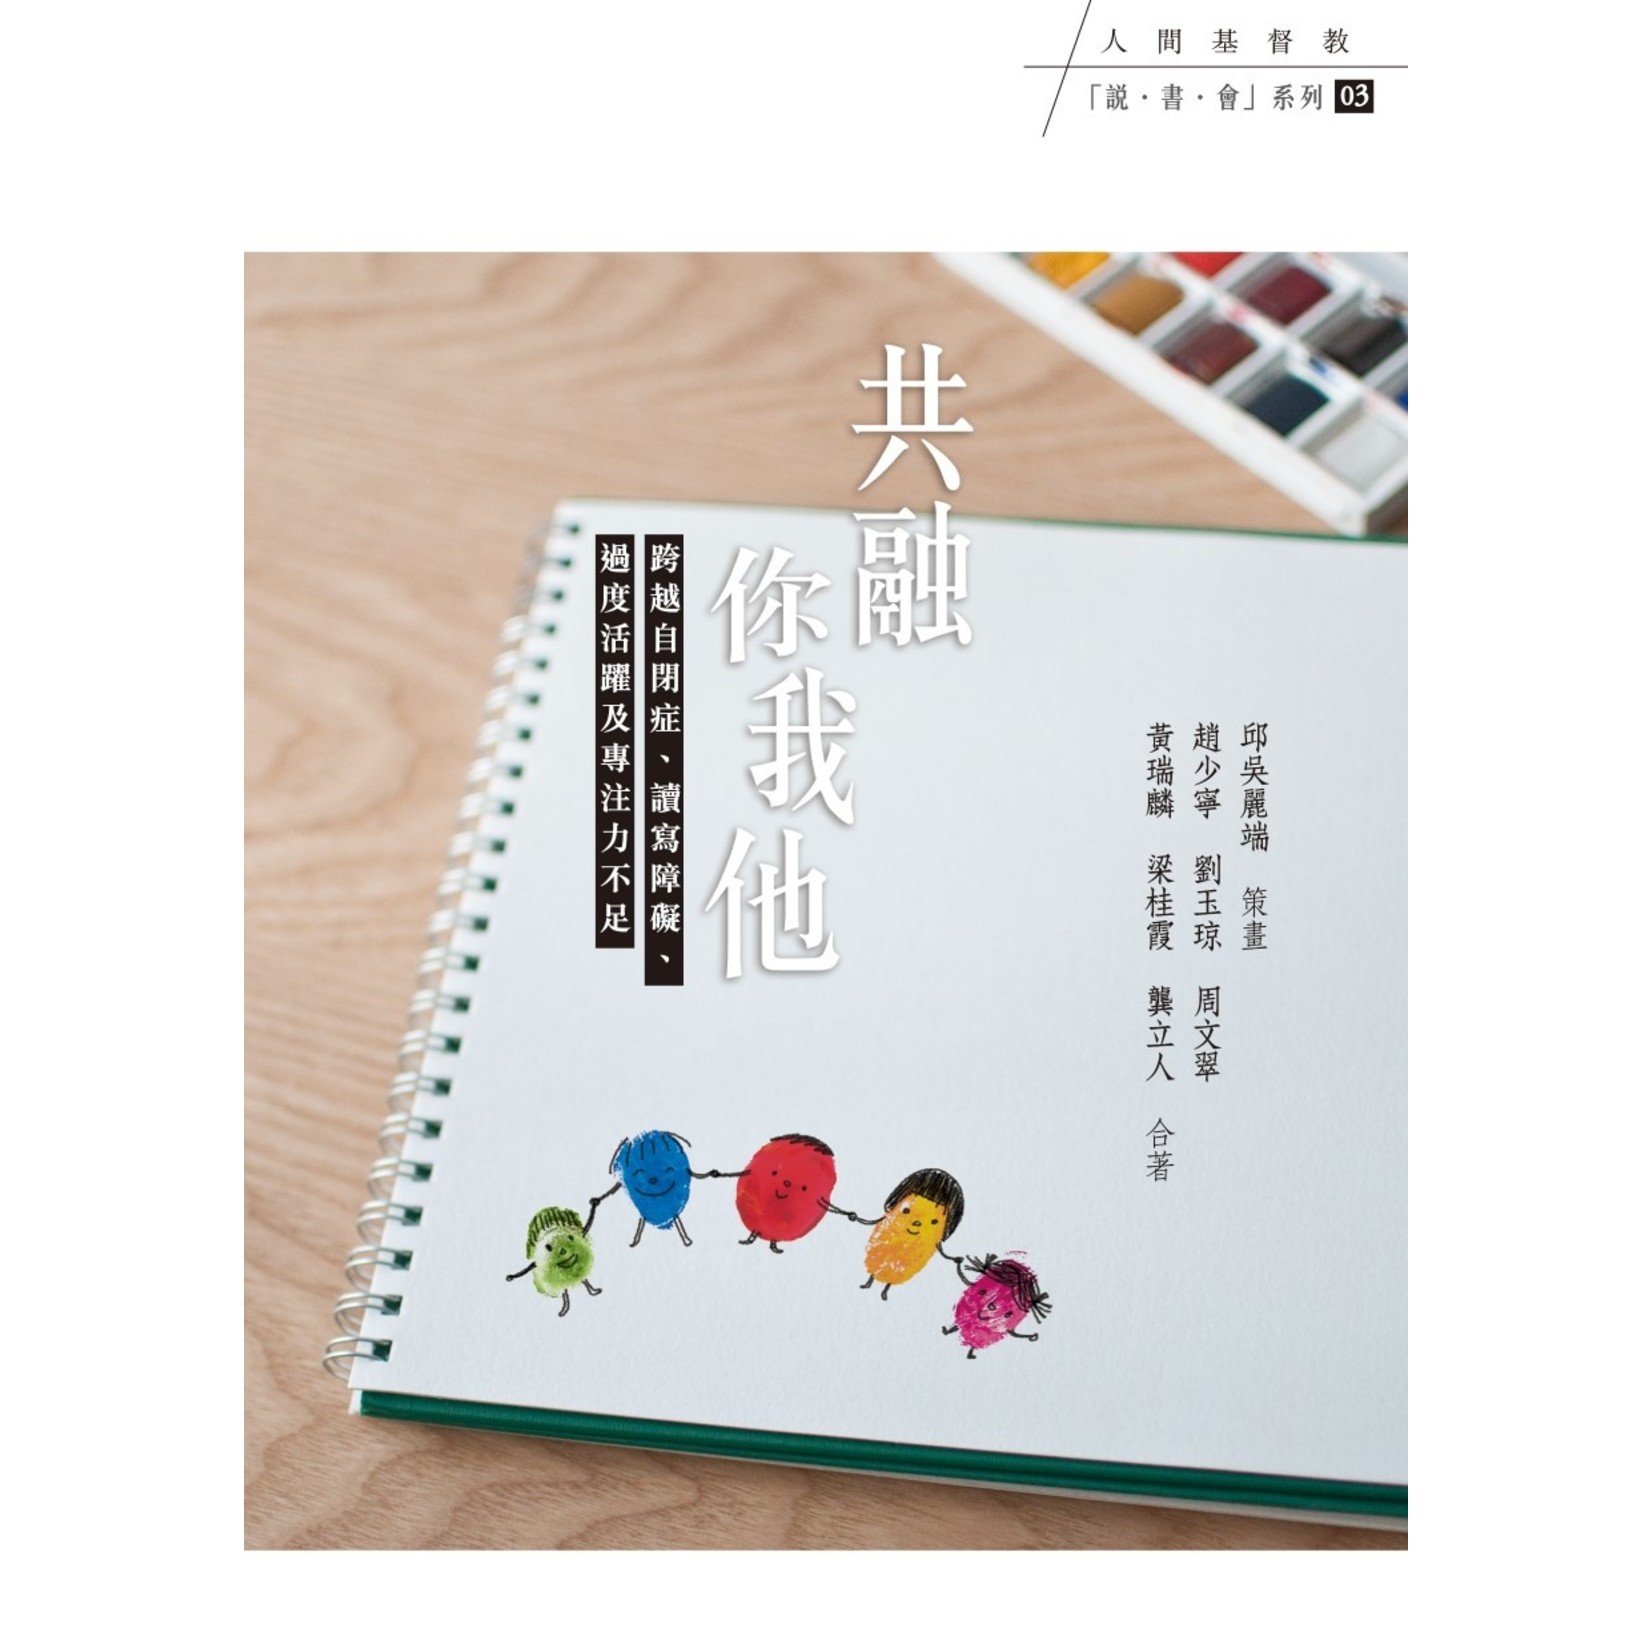 基督教文藝(香港) Chinese Christian Literature Council 共融你我他：跨越自閉症、讀寫障礙、過度活躍及專注力不足